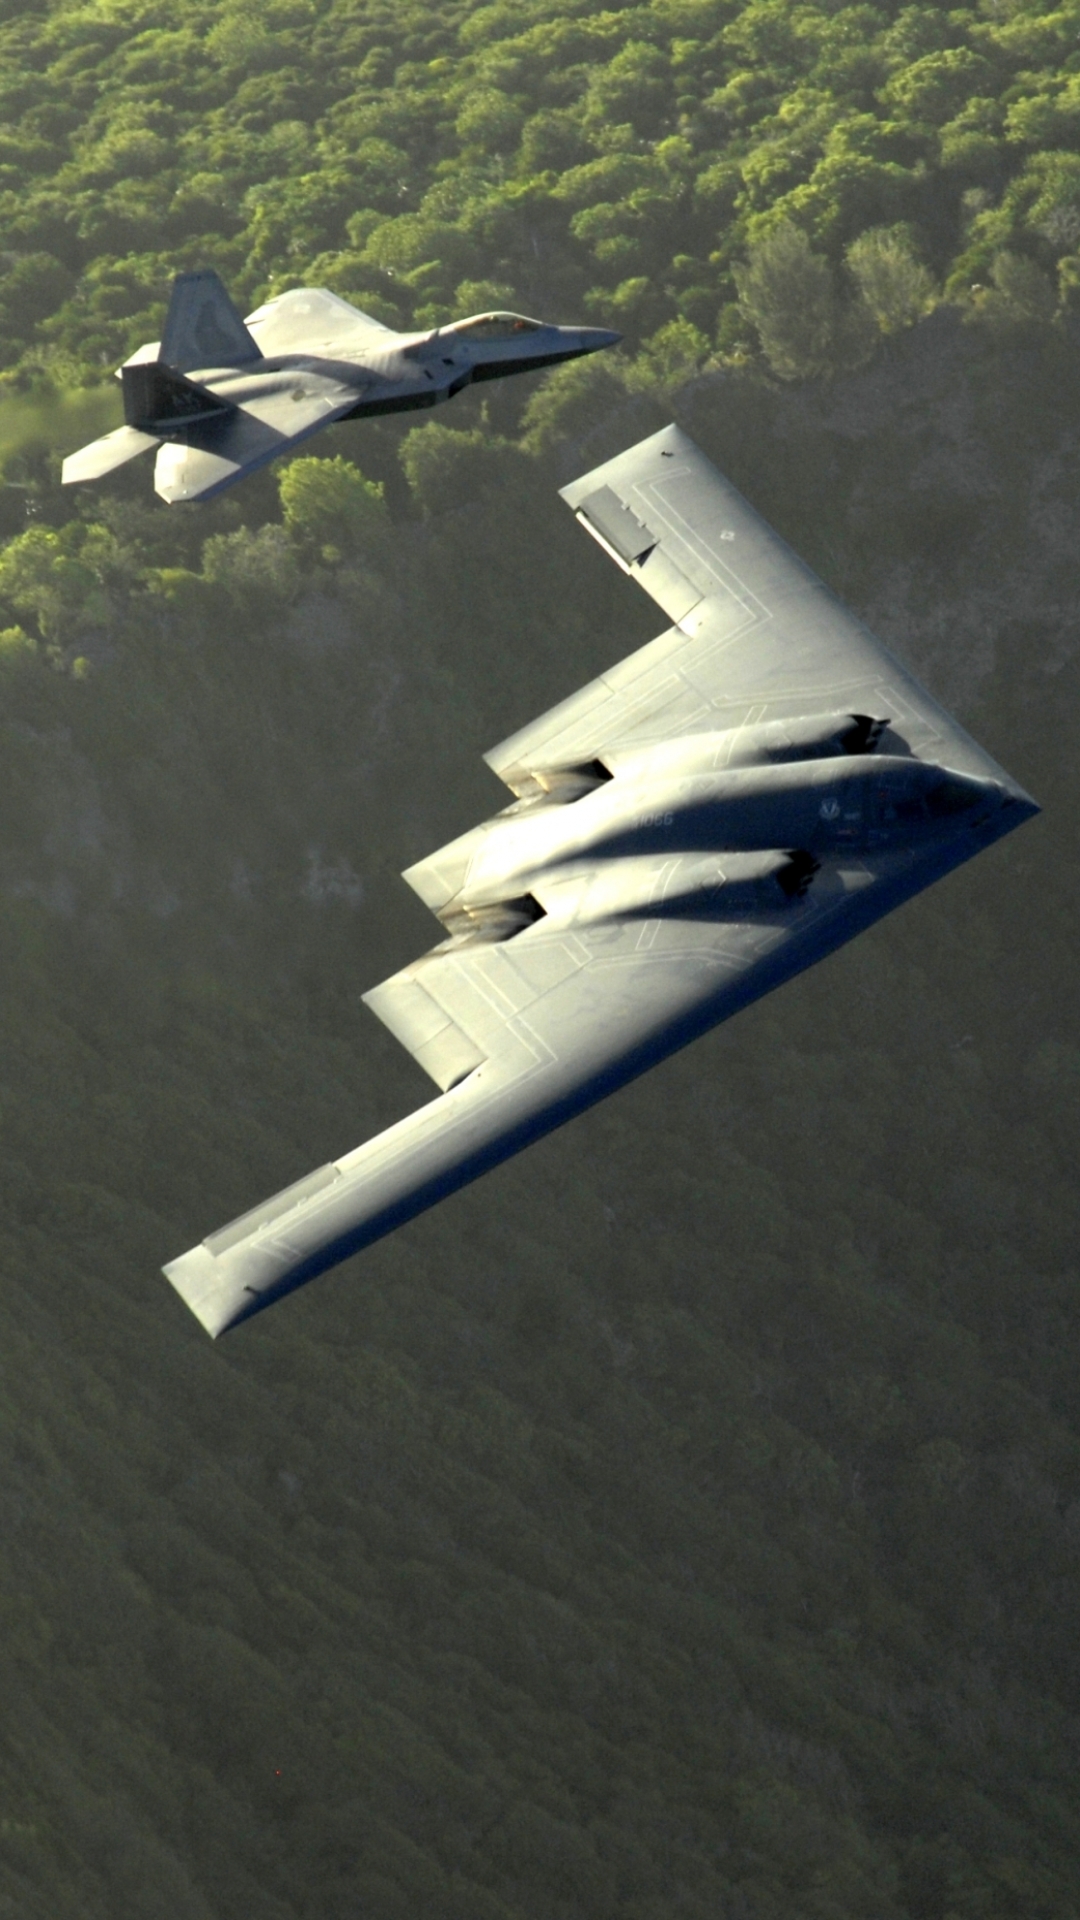 northrop grumman b 2 spirit, military, stealth aircraft, airplane, aircraft, air force, bombers